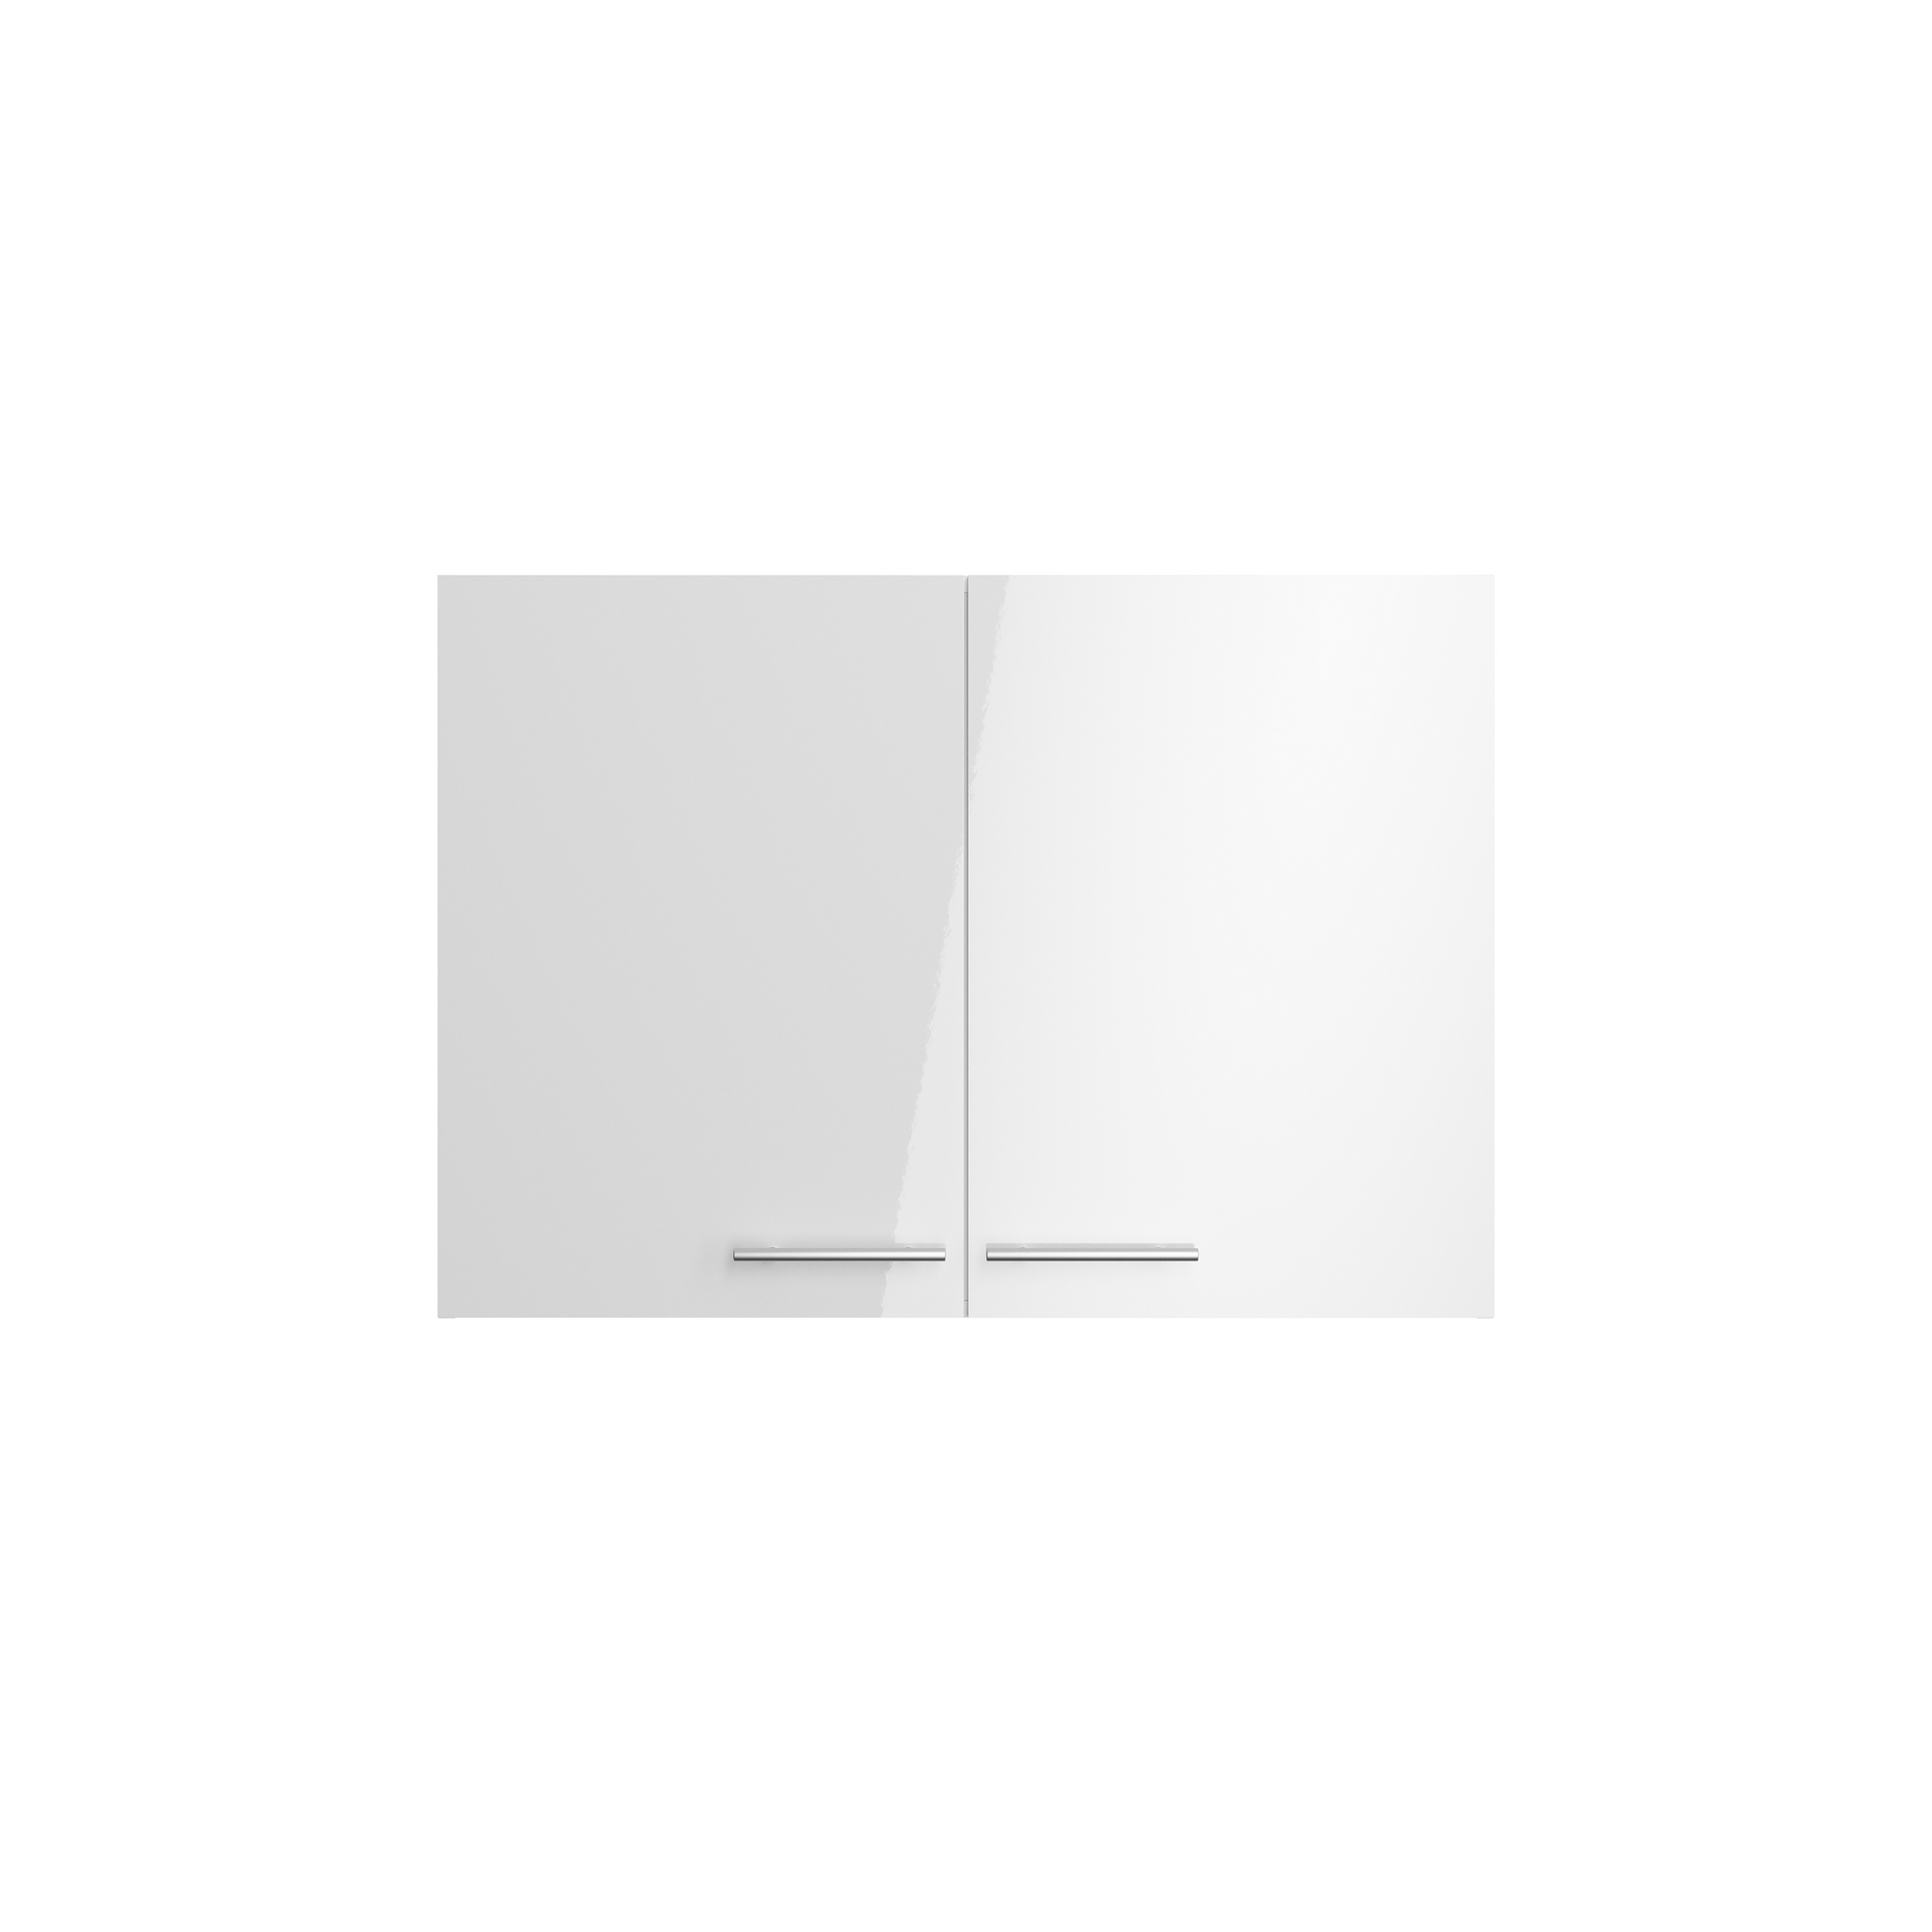 Oberschrank 'Optikomfort Rurik986' weiß 100 x 70,4 x 34,9 cm + product picture